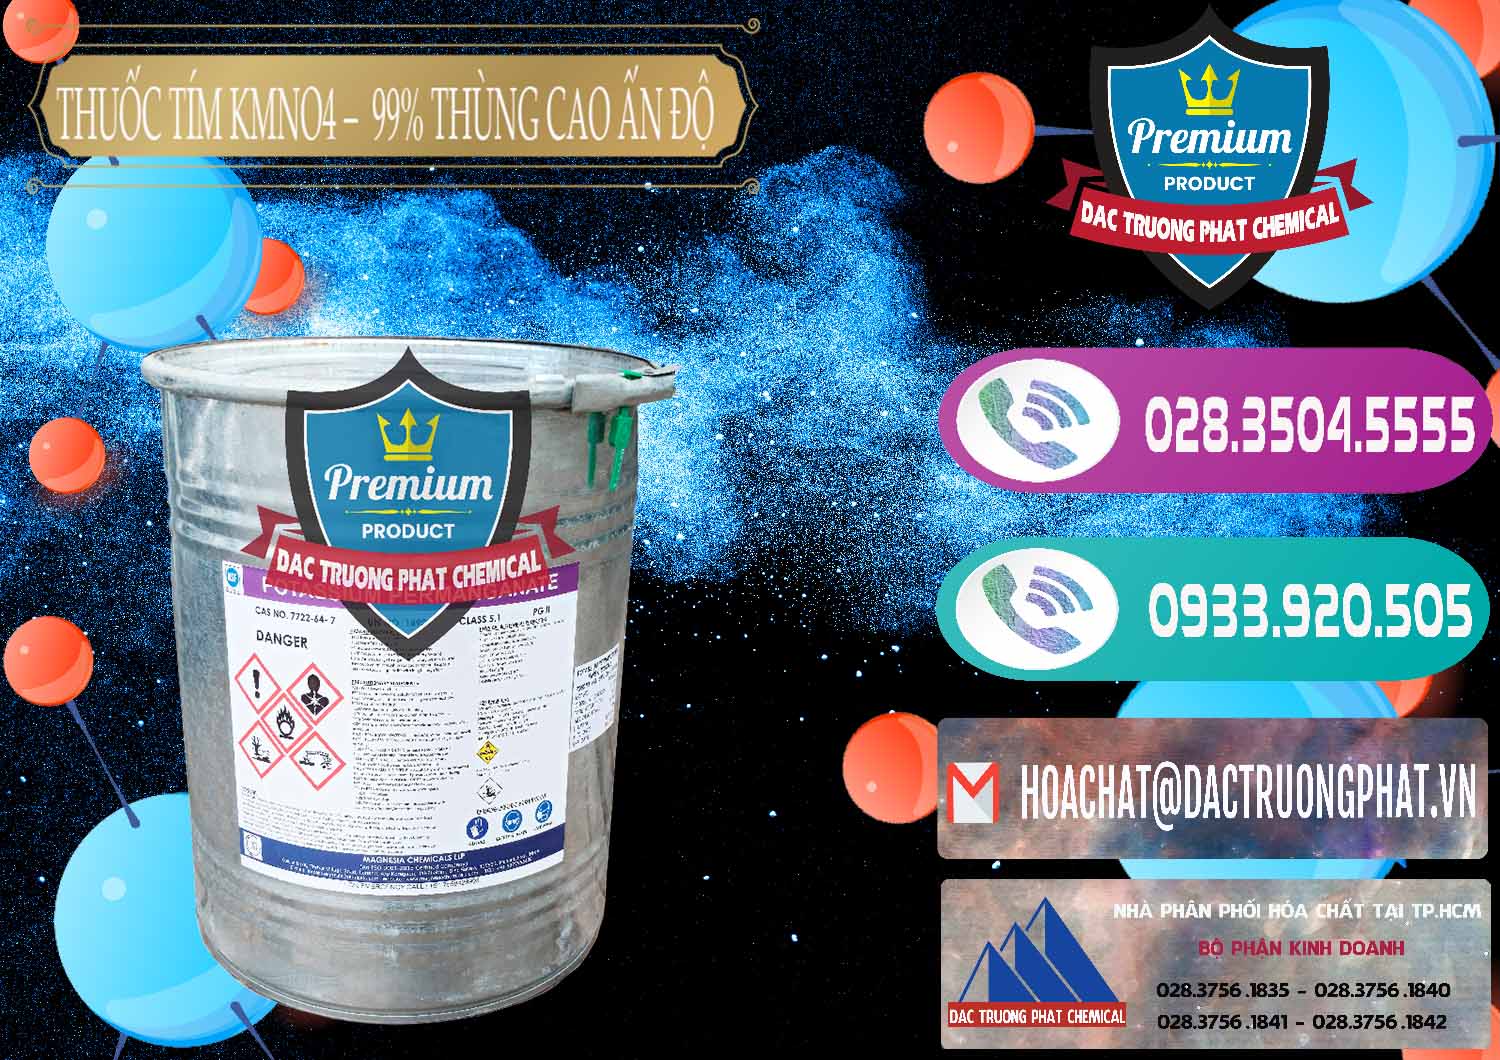 Nơi cung ứng ( bán ) Thuốc Tím - KMNO4 Thùng Cao 99% Magnesia Chemicals Ấn Độ India - 0164 - Cty phân phối _ cung cấp hóa chất tại TP.HCM - hoachatxulynuoc.com